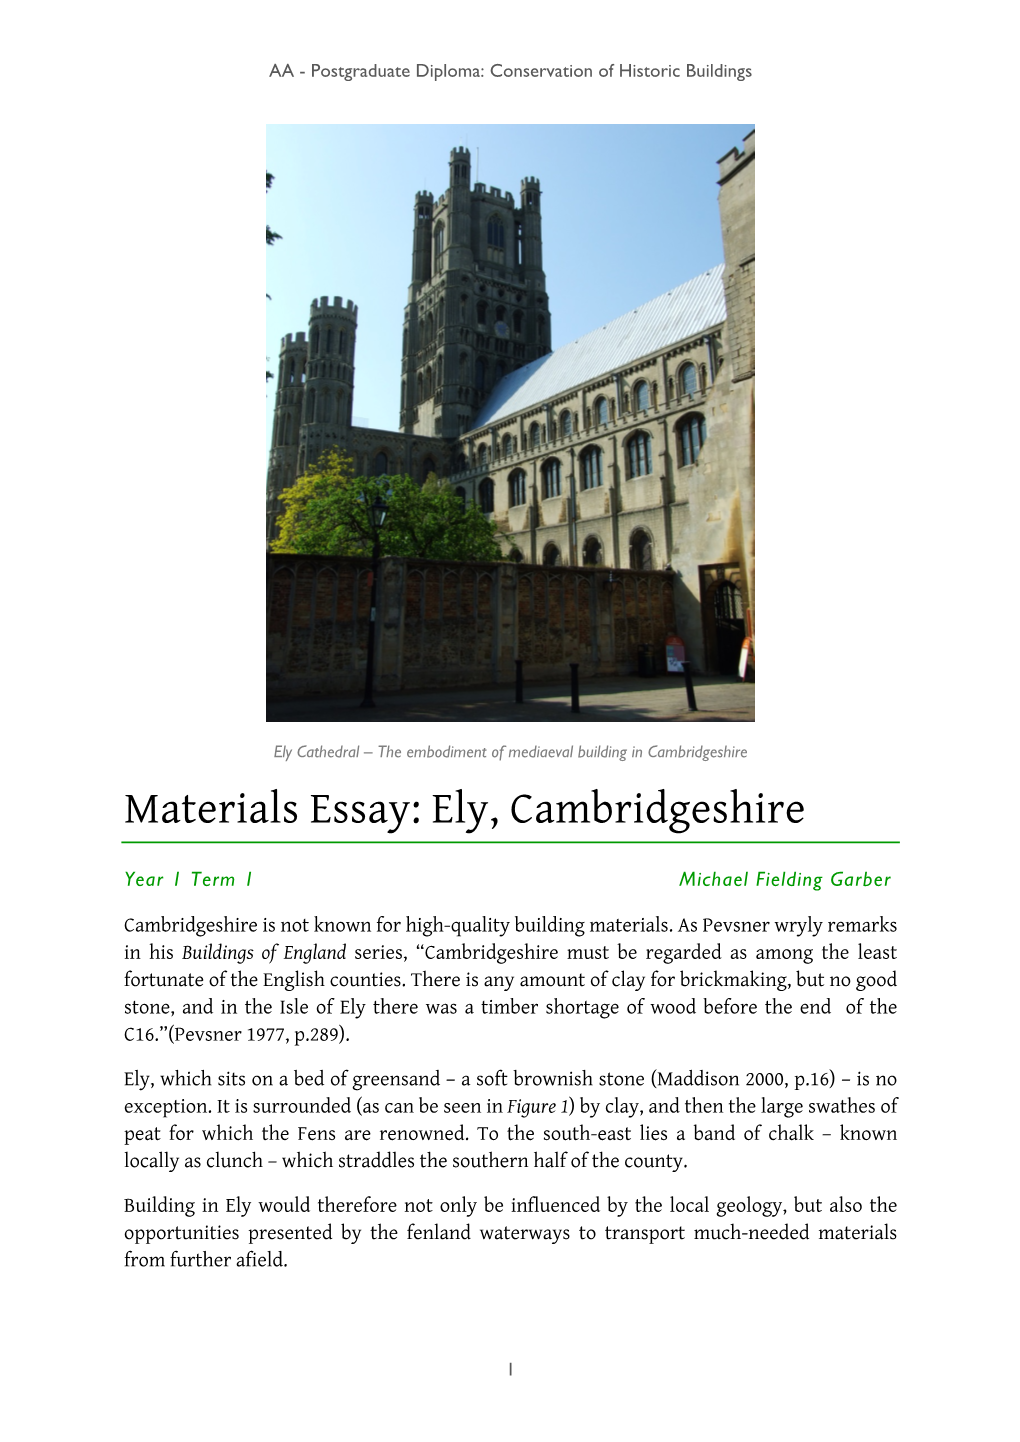 Materials Essay: Ely, Cambridgeshire